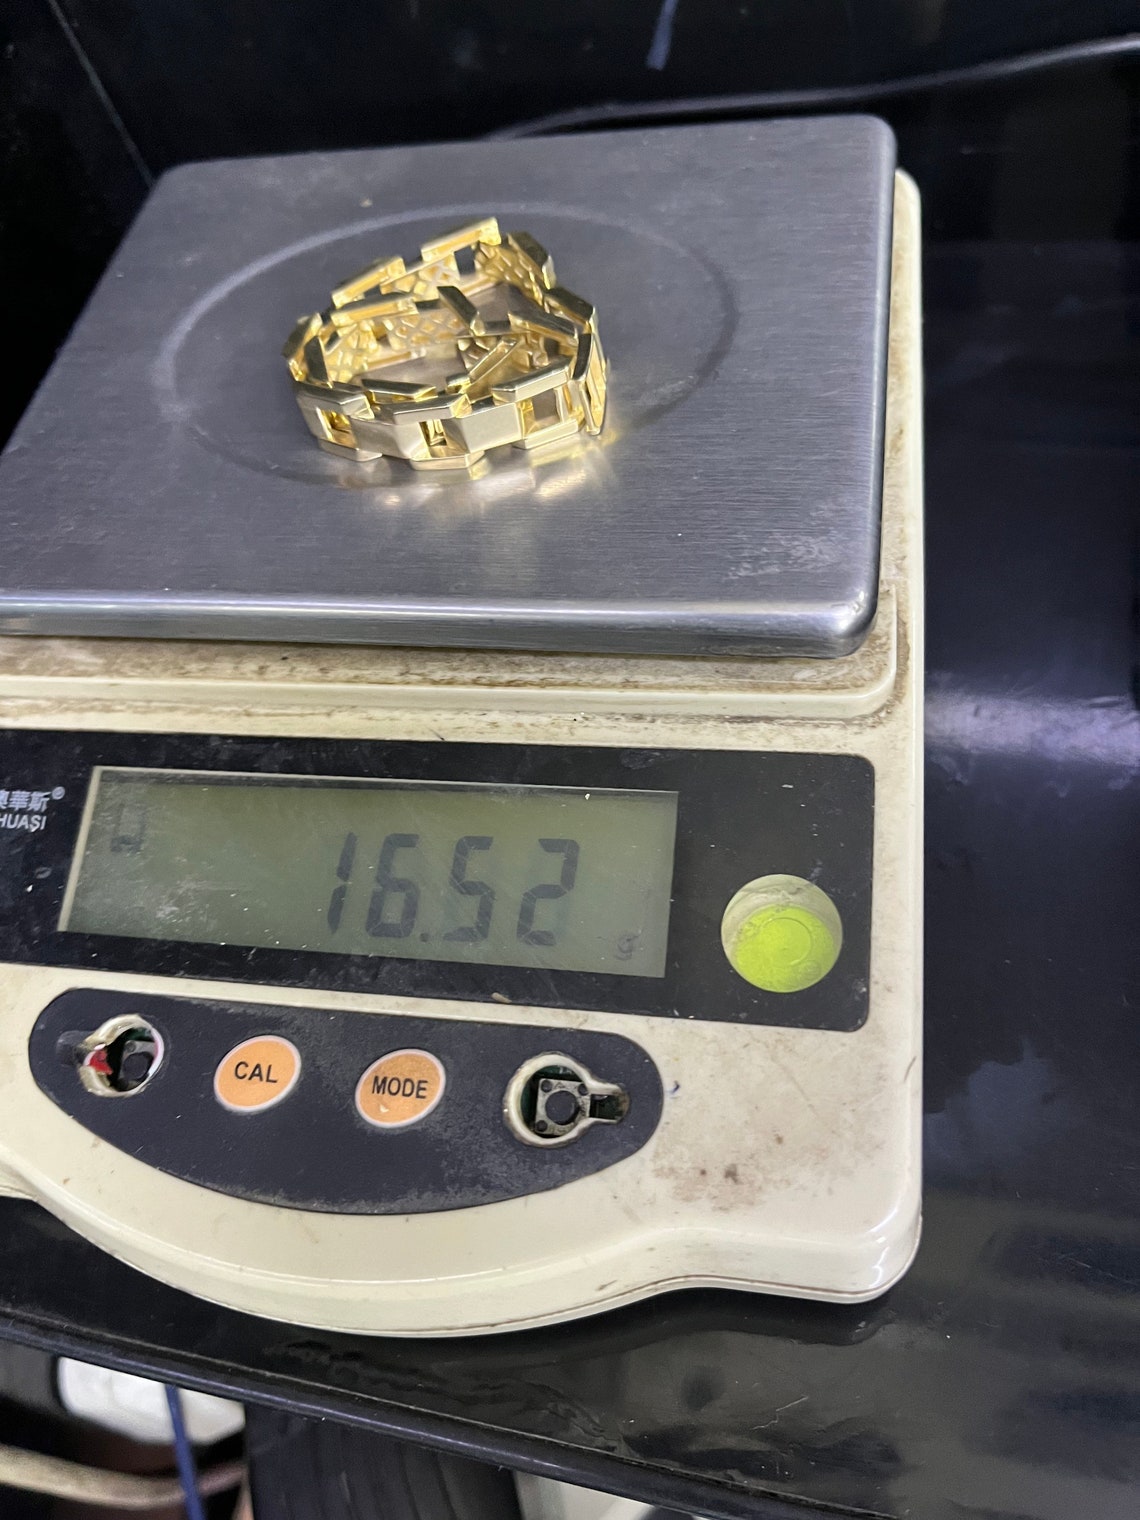 Golden Bracelet - 14K Solid Gold (585)